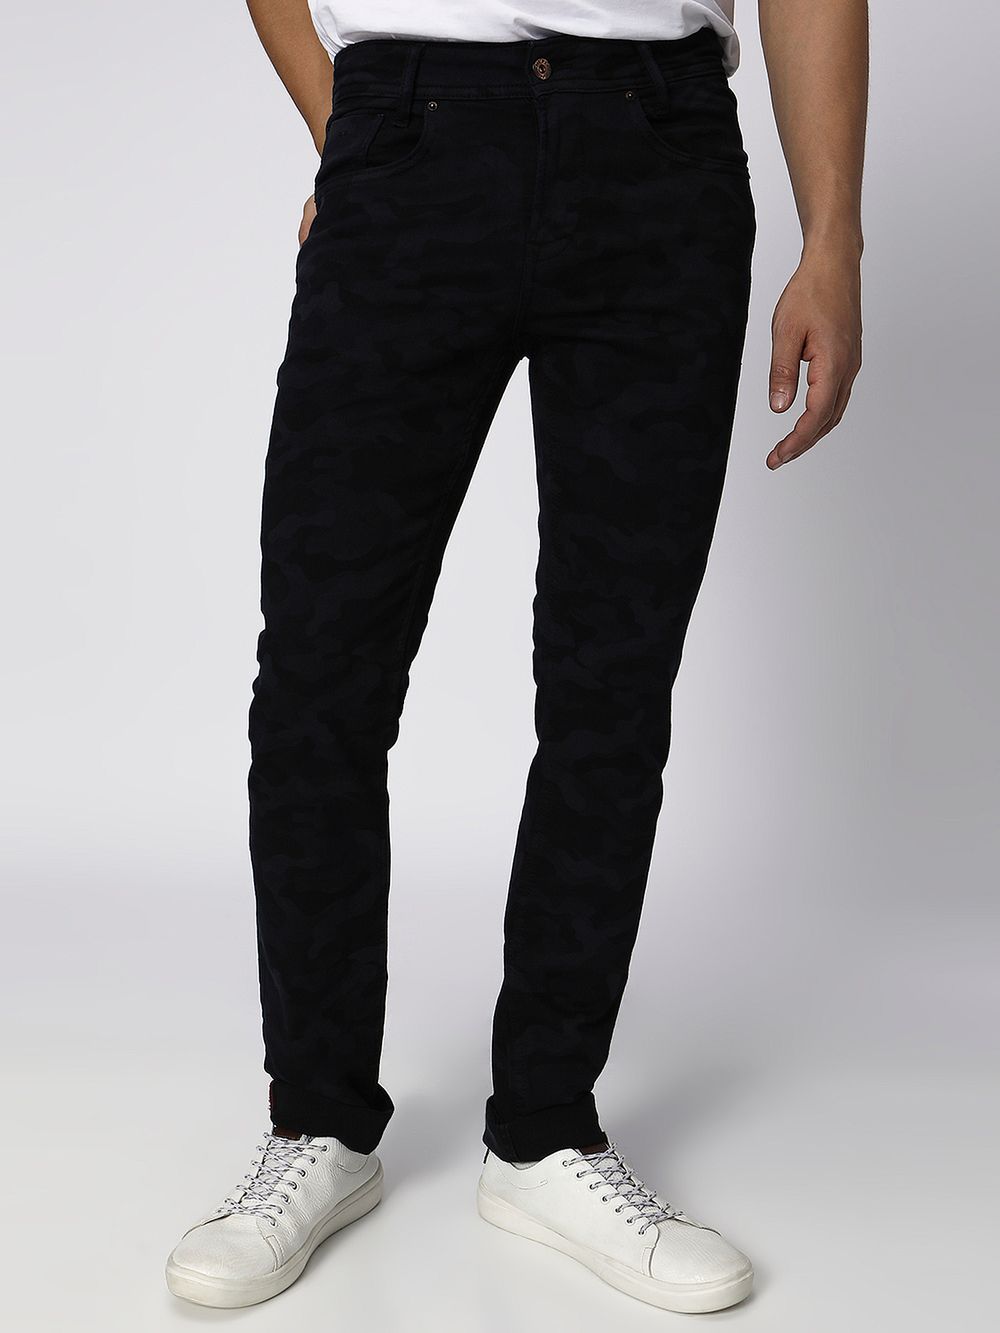 Black Super Slim Fit Distressed Stretch Jeans